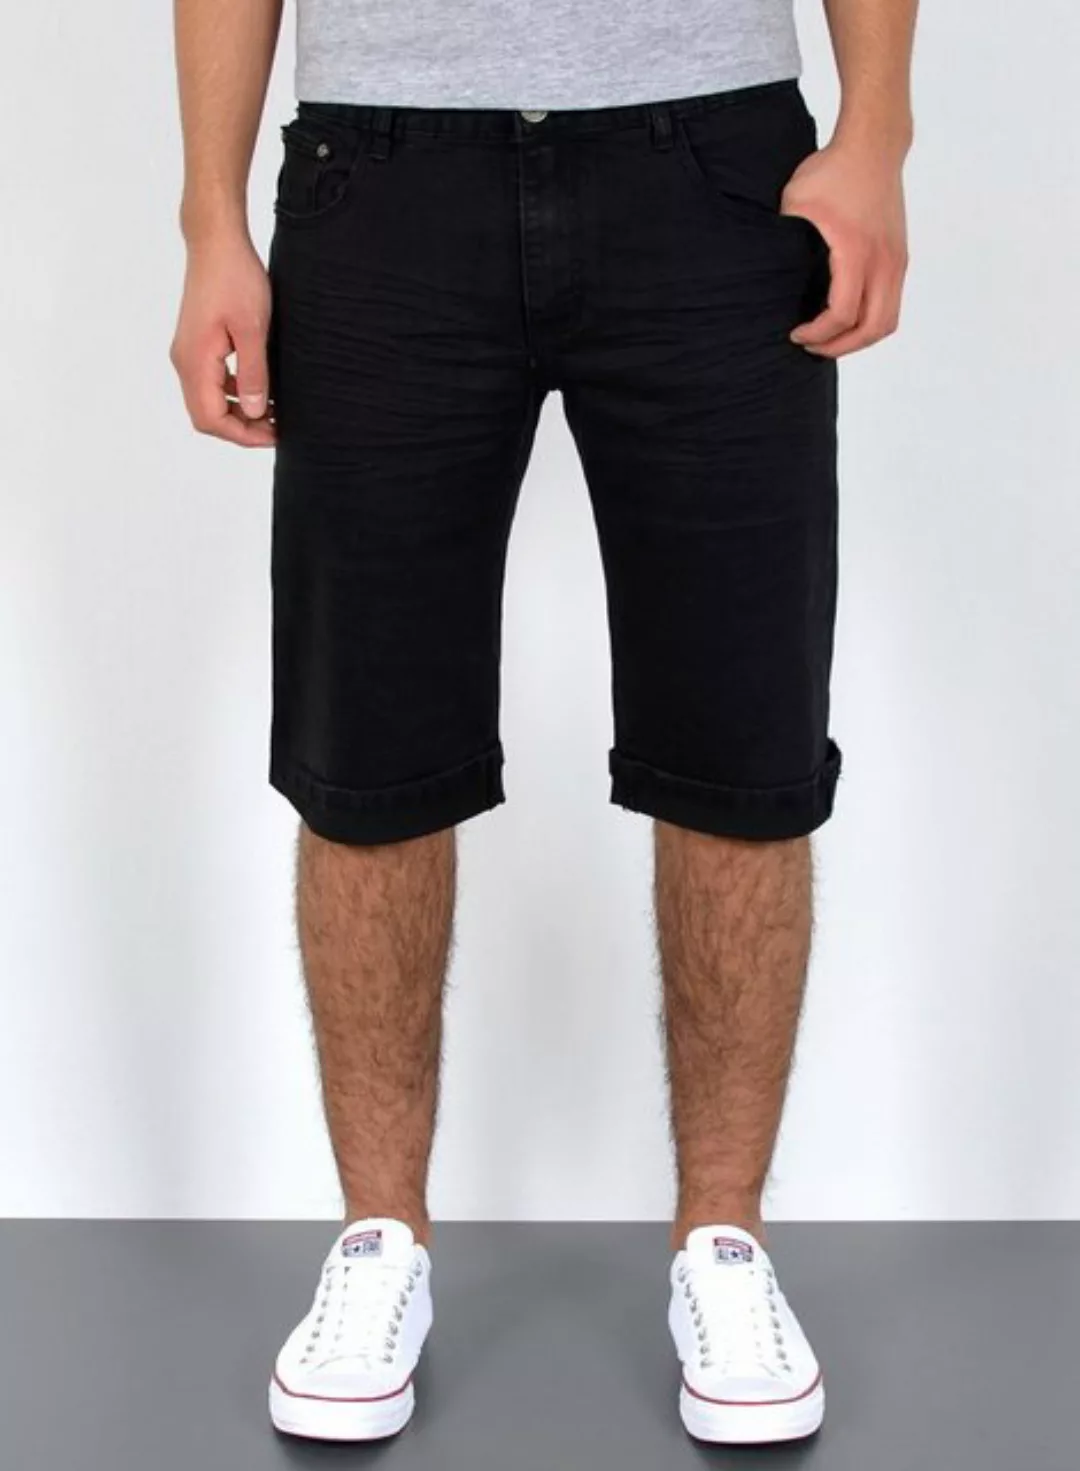 ESRA Jeansshorts A363 Herren Jeans Shorts Hose, bis Übergröße / Plussize Gr günstig online kaufen